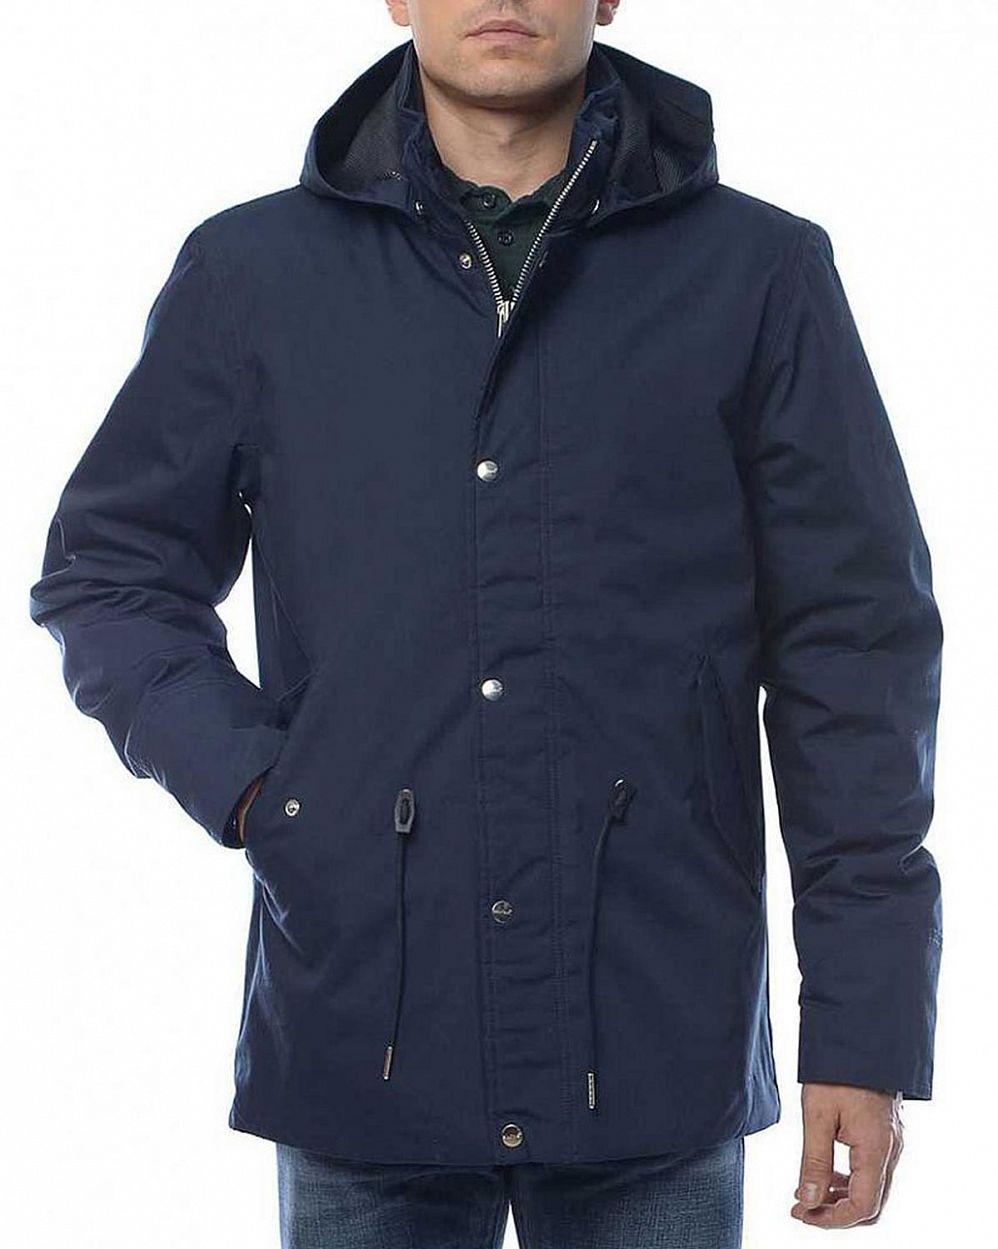 Куртка мужская водоотталкивающая демисезонная Elvine Ansgar Navy отзывы